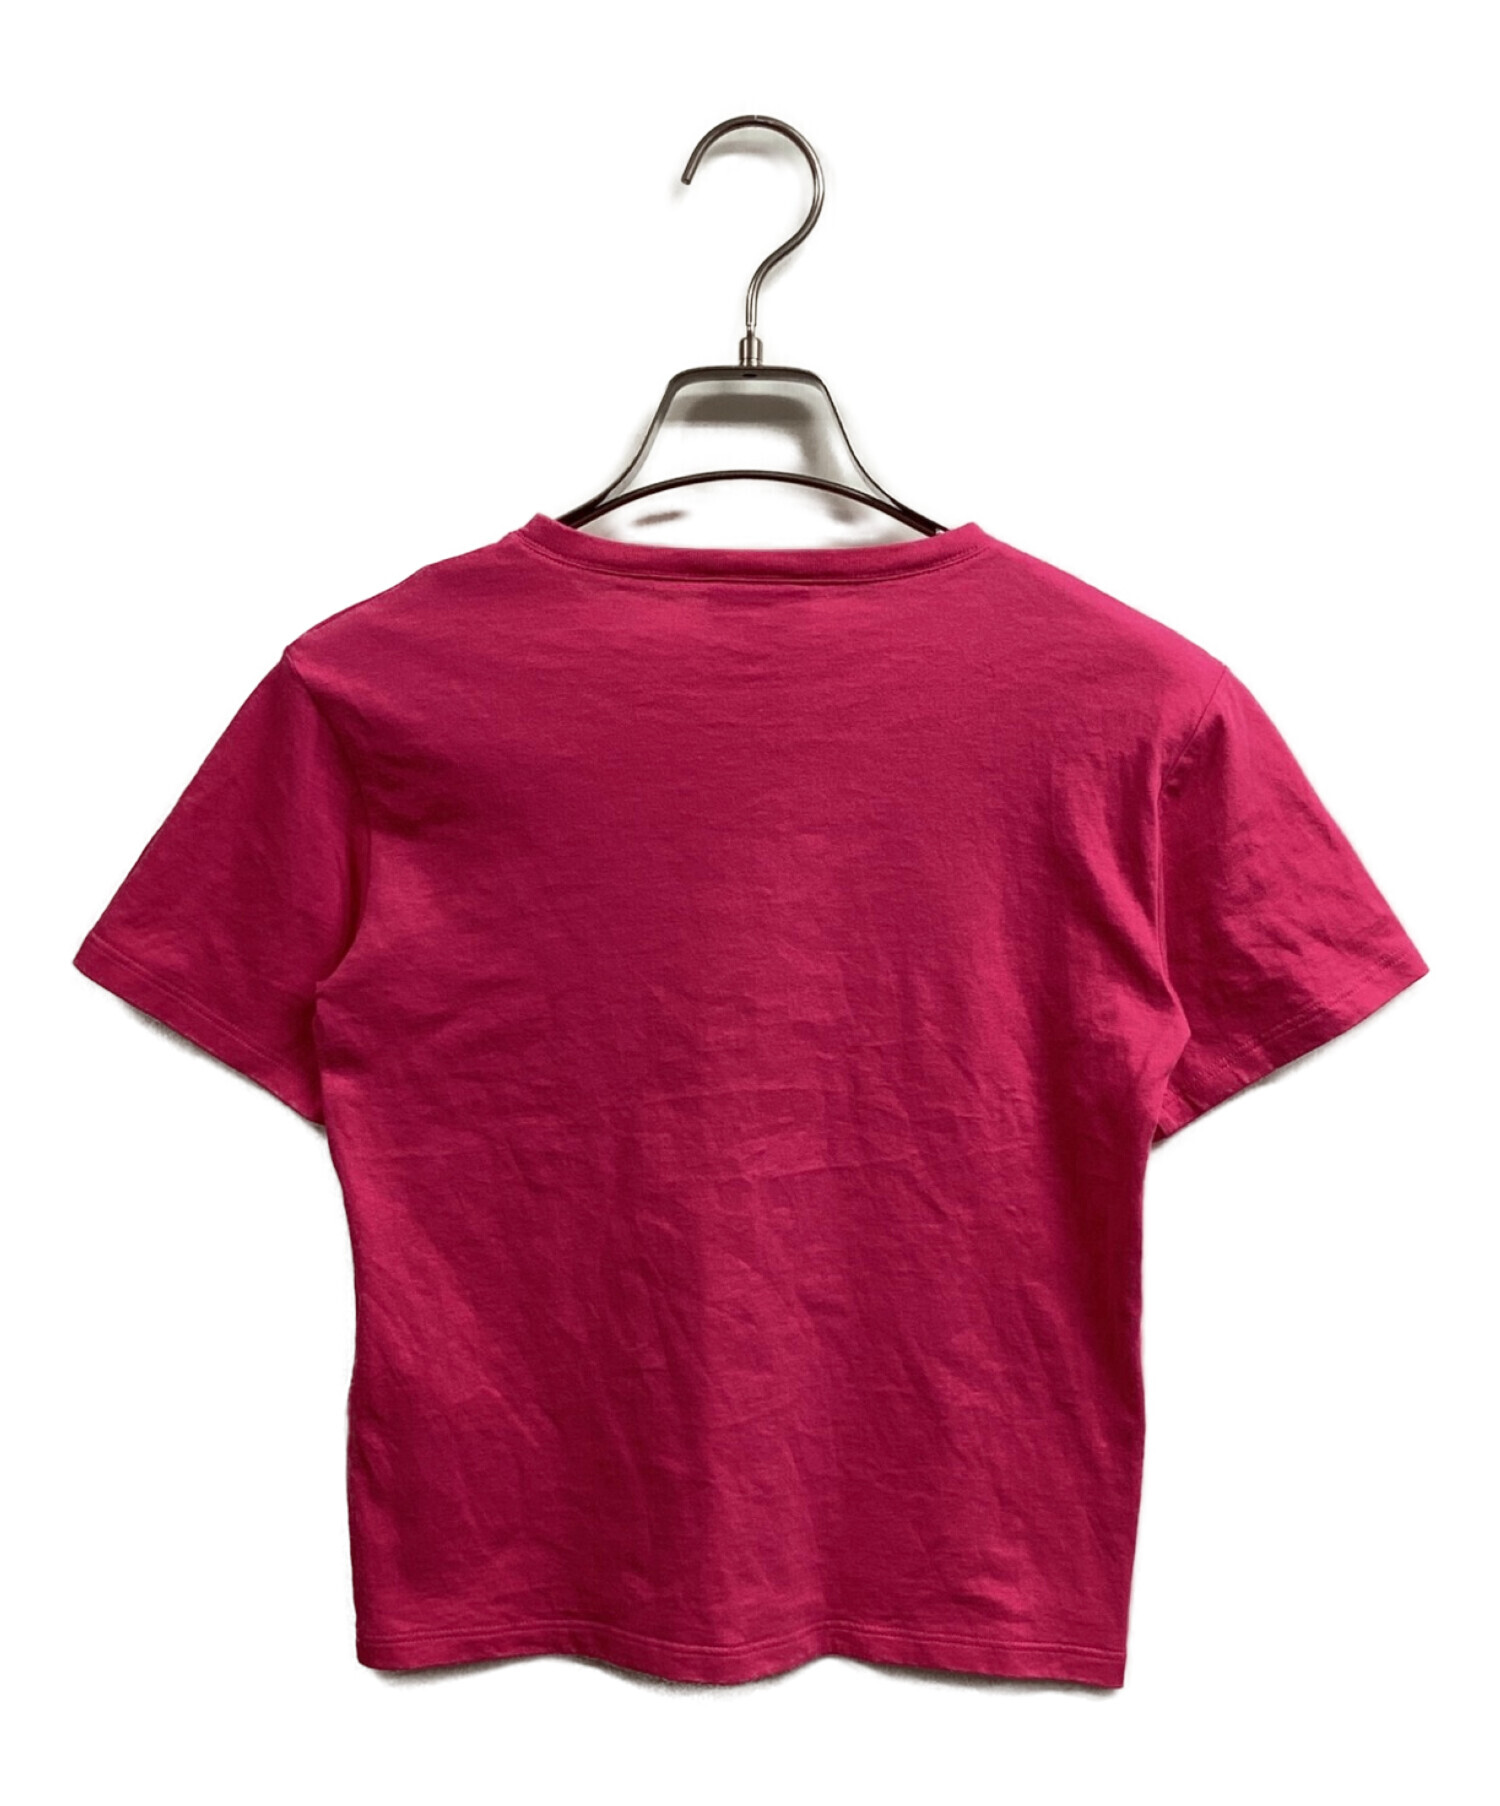 GUCCI (グッチ) テニスロゴ刺繍Tシャツ ピンク サイズ:無表記